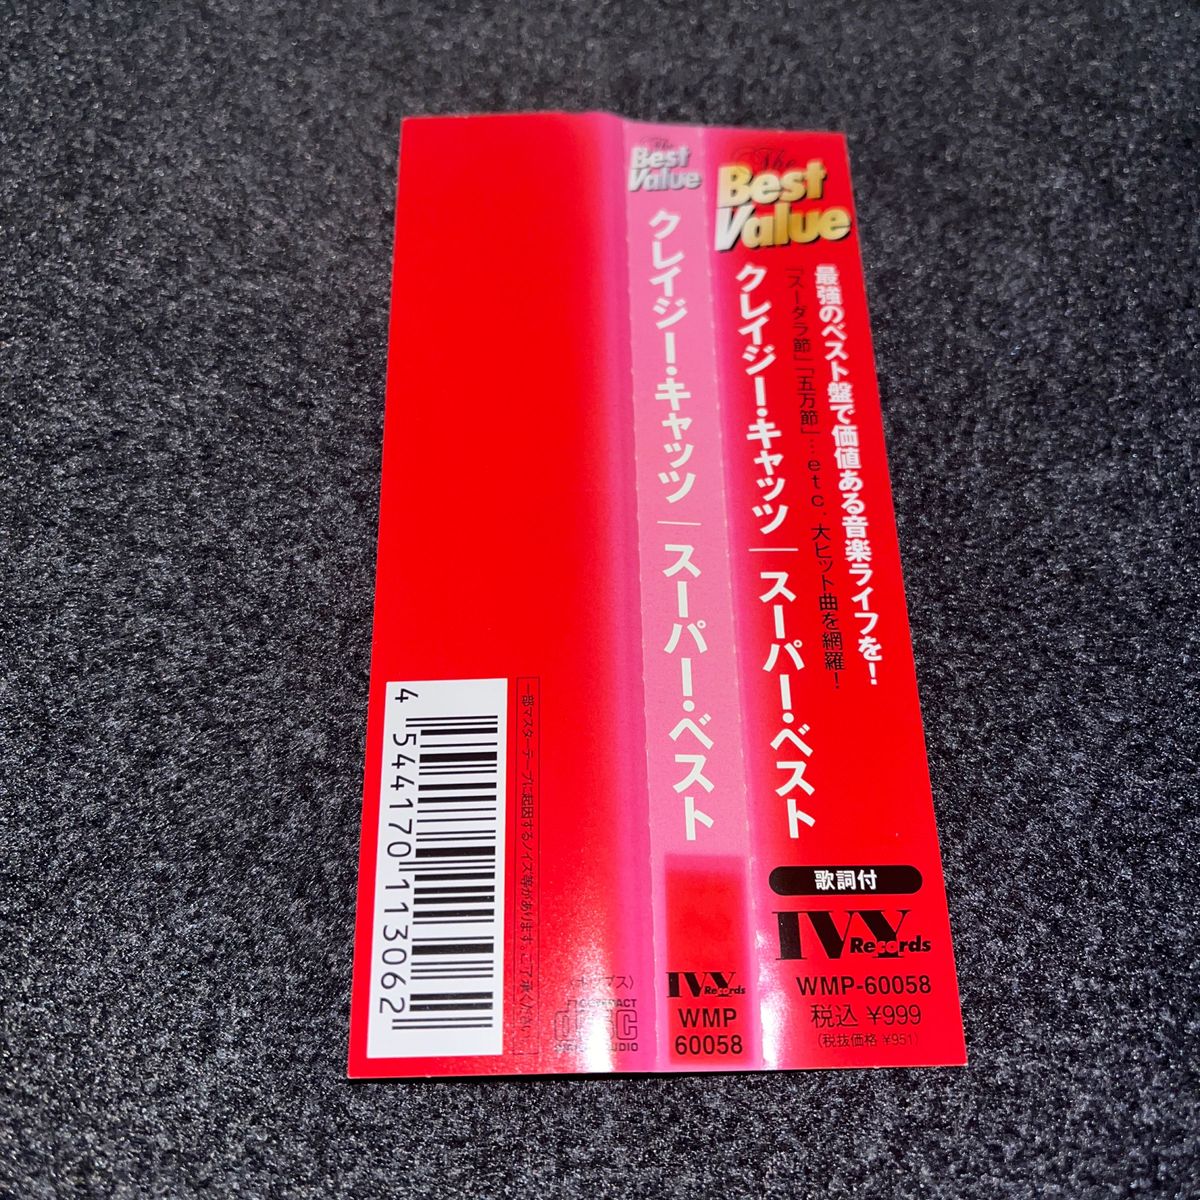 スーパー・ベスト / クレイジー・キャッツ レンタルアップCD